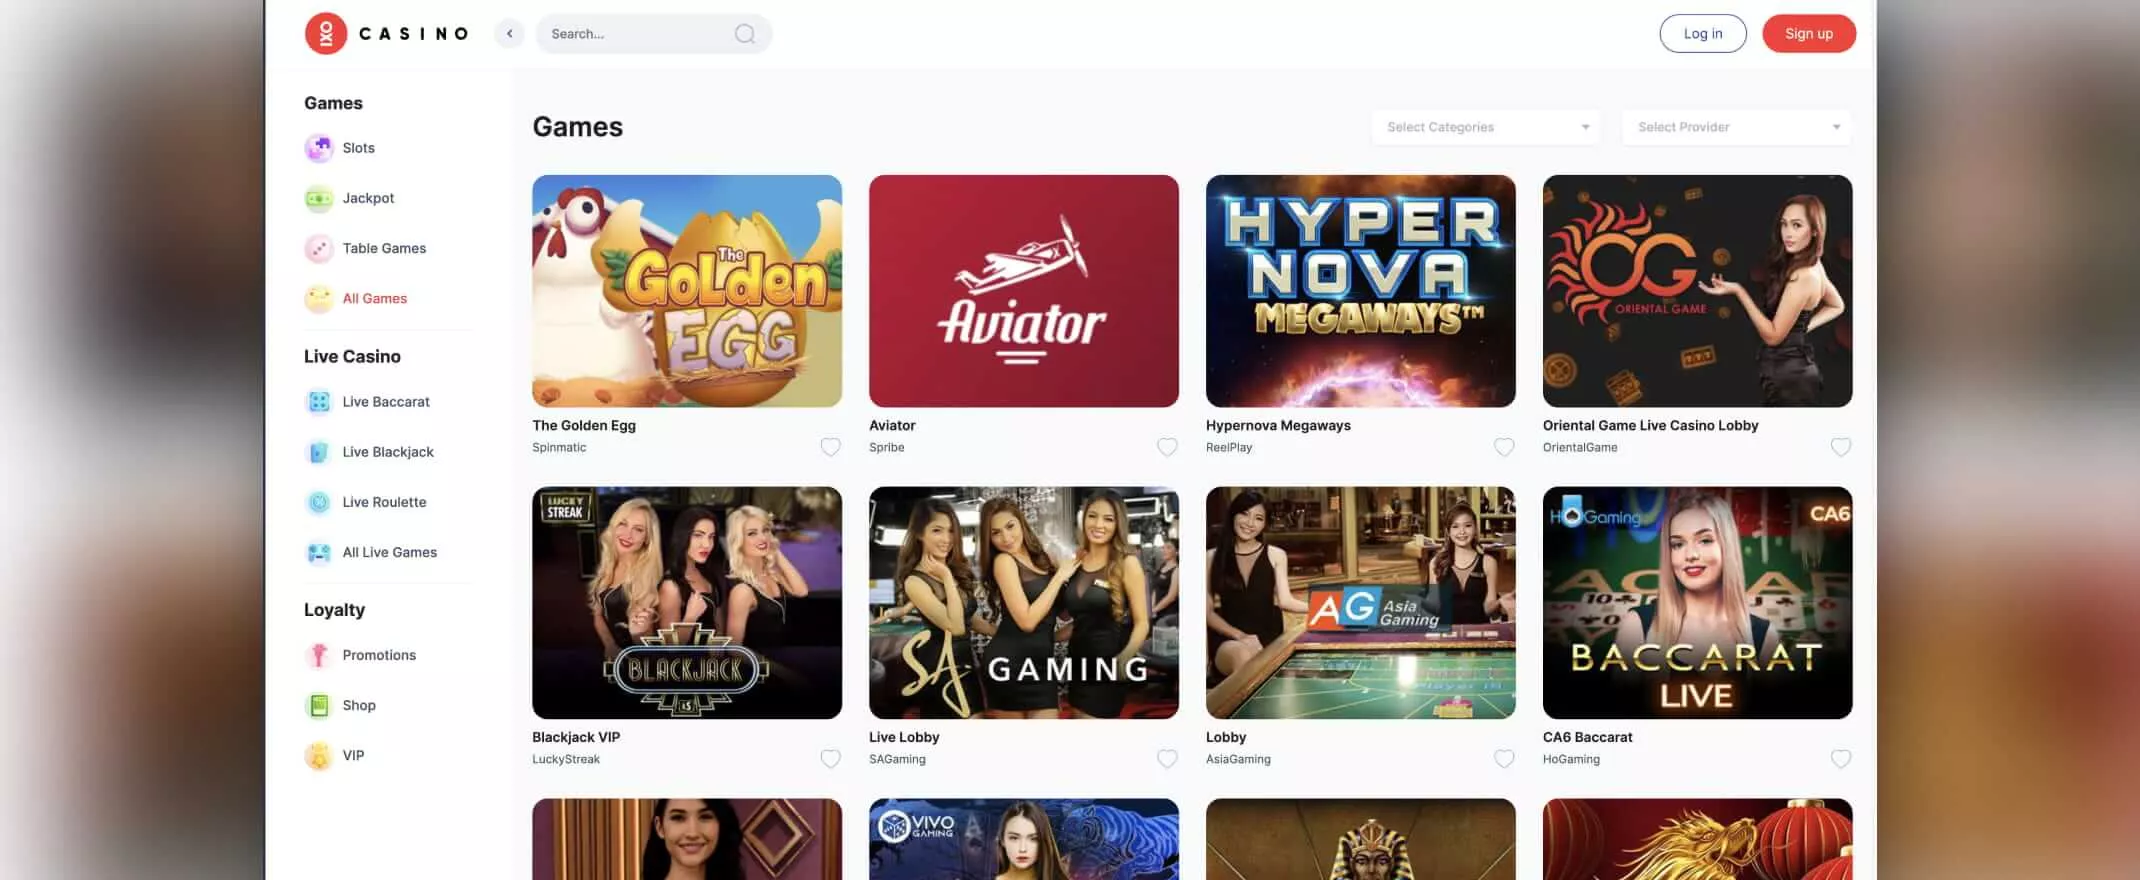 Oxi casino screenshot of the games